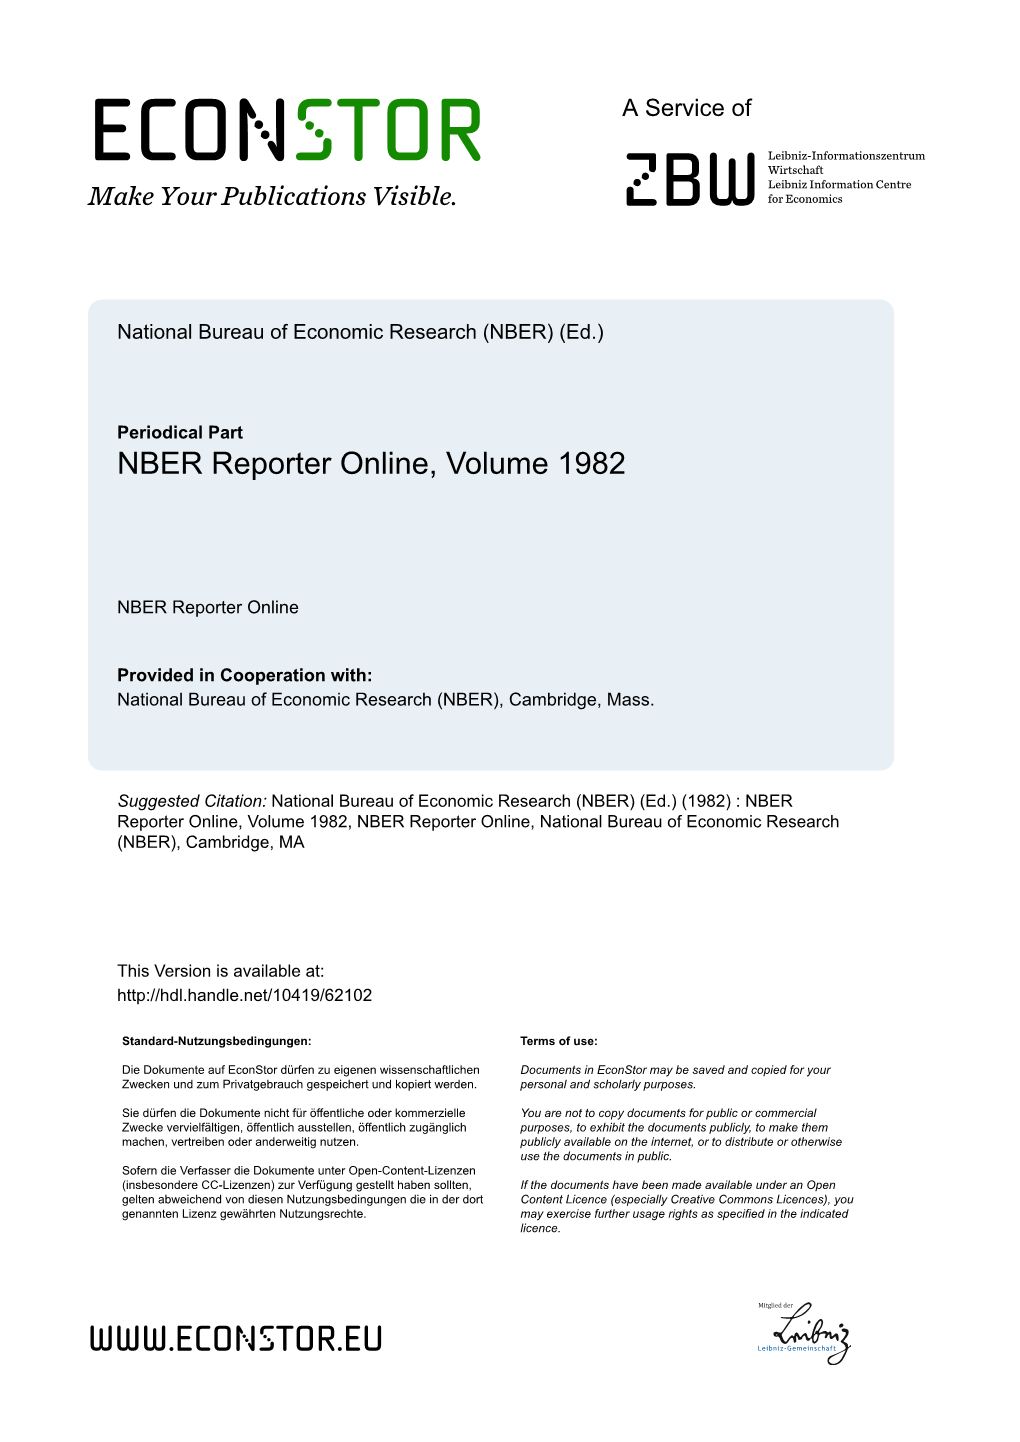 NBER Reporter Online, Volume 1982